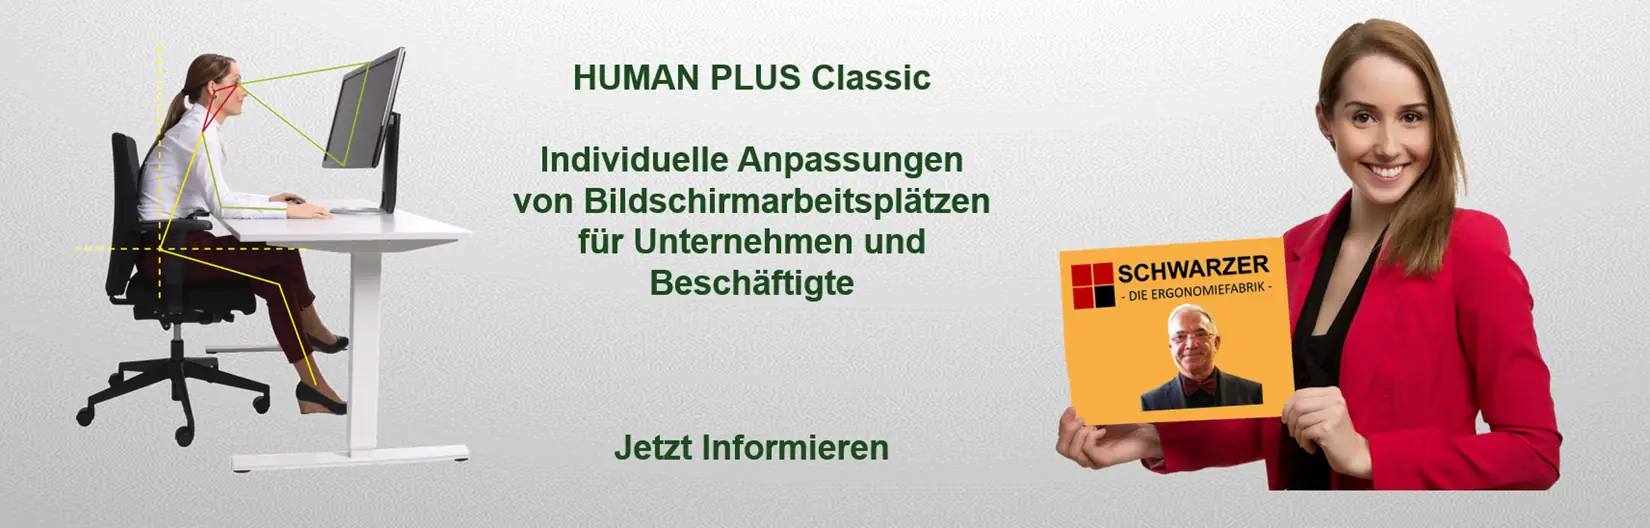 Image Header - HUMAN PLUS Classic - individuelle Arbeitsplatzanpassung für Unternehmen und Beschäftigte